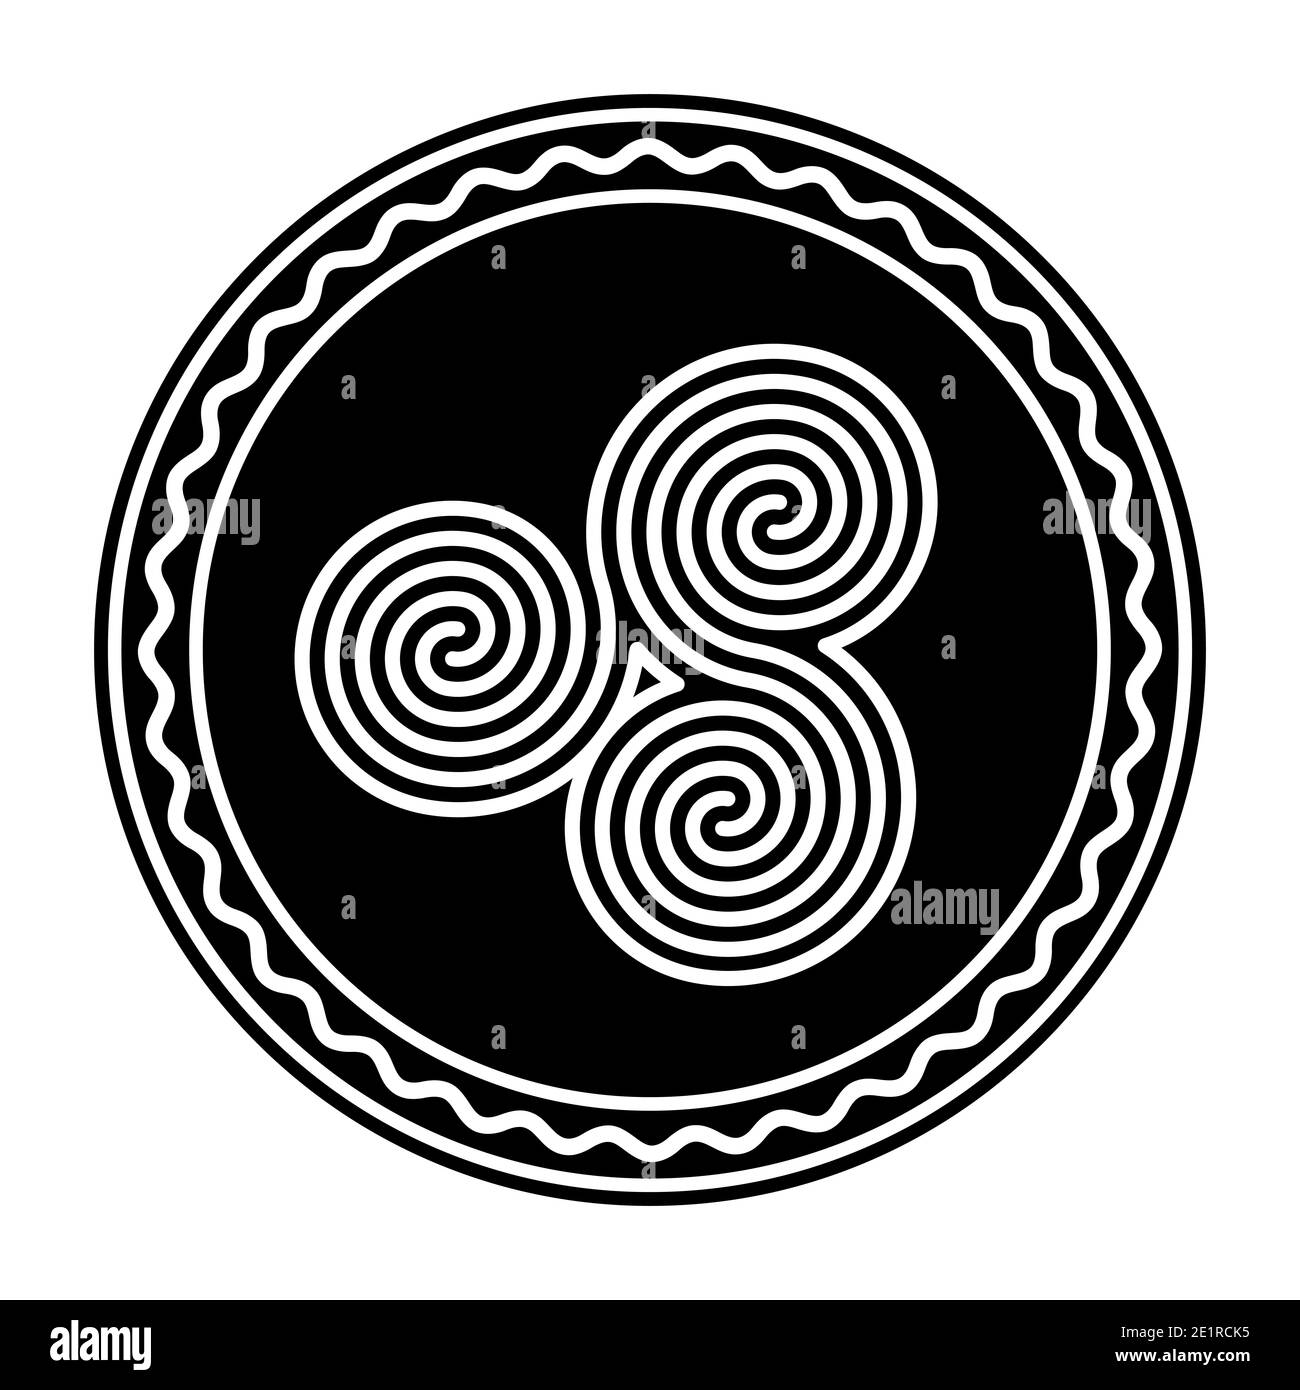 Trois spirales Celtic doubles connectées dans un cadre circulaire. Triple spirale, formée par trois spirales archimédiennes interverrouillées. Symbole et motif. Banque D'Images